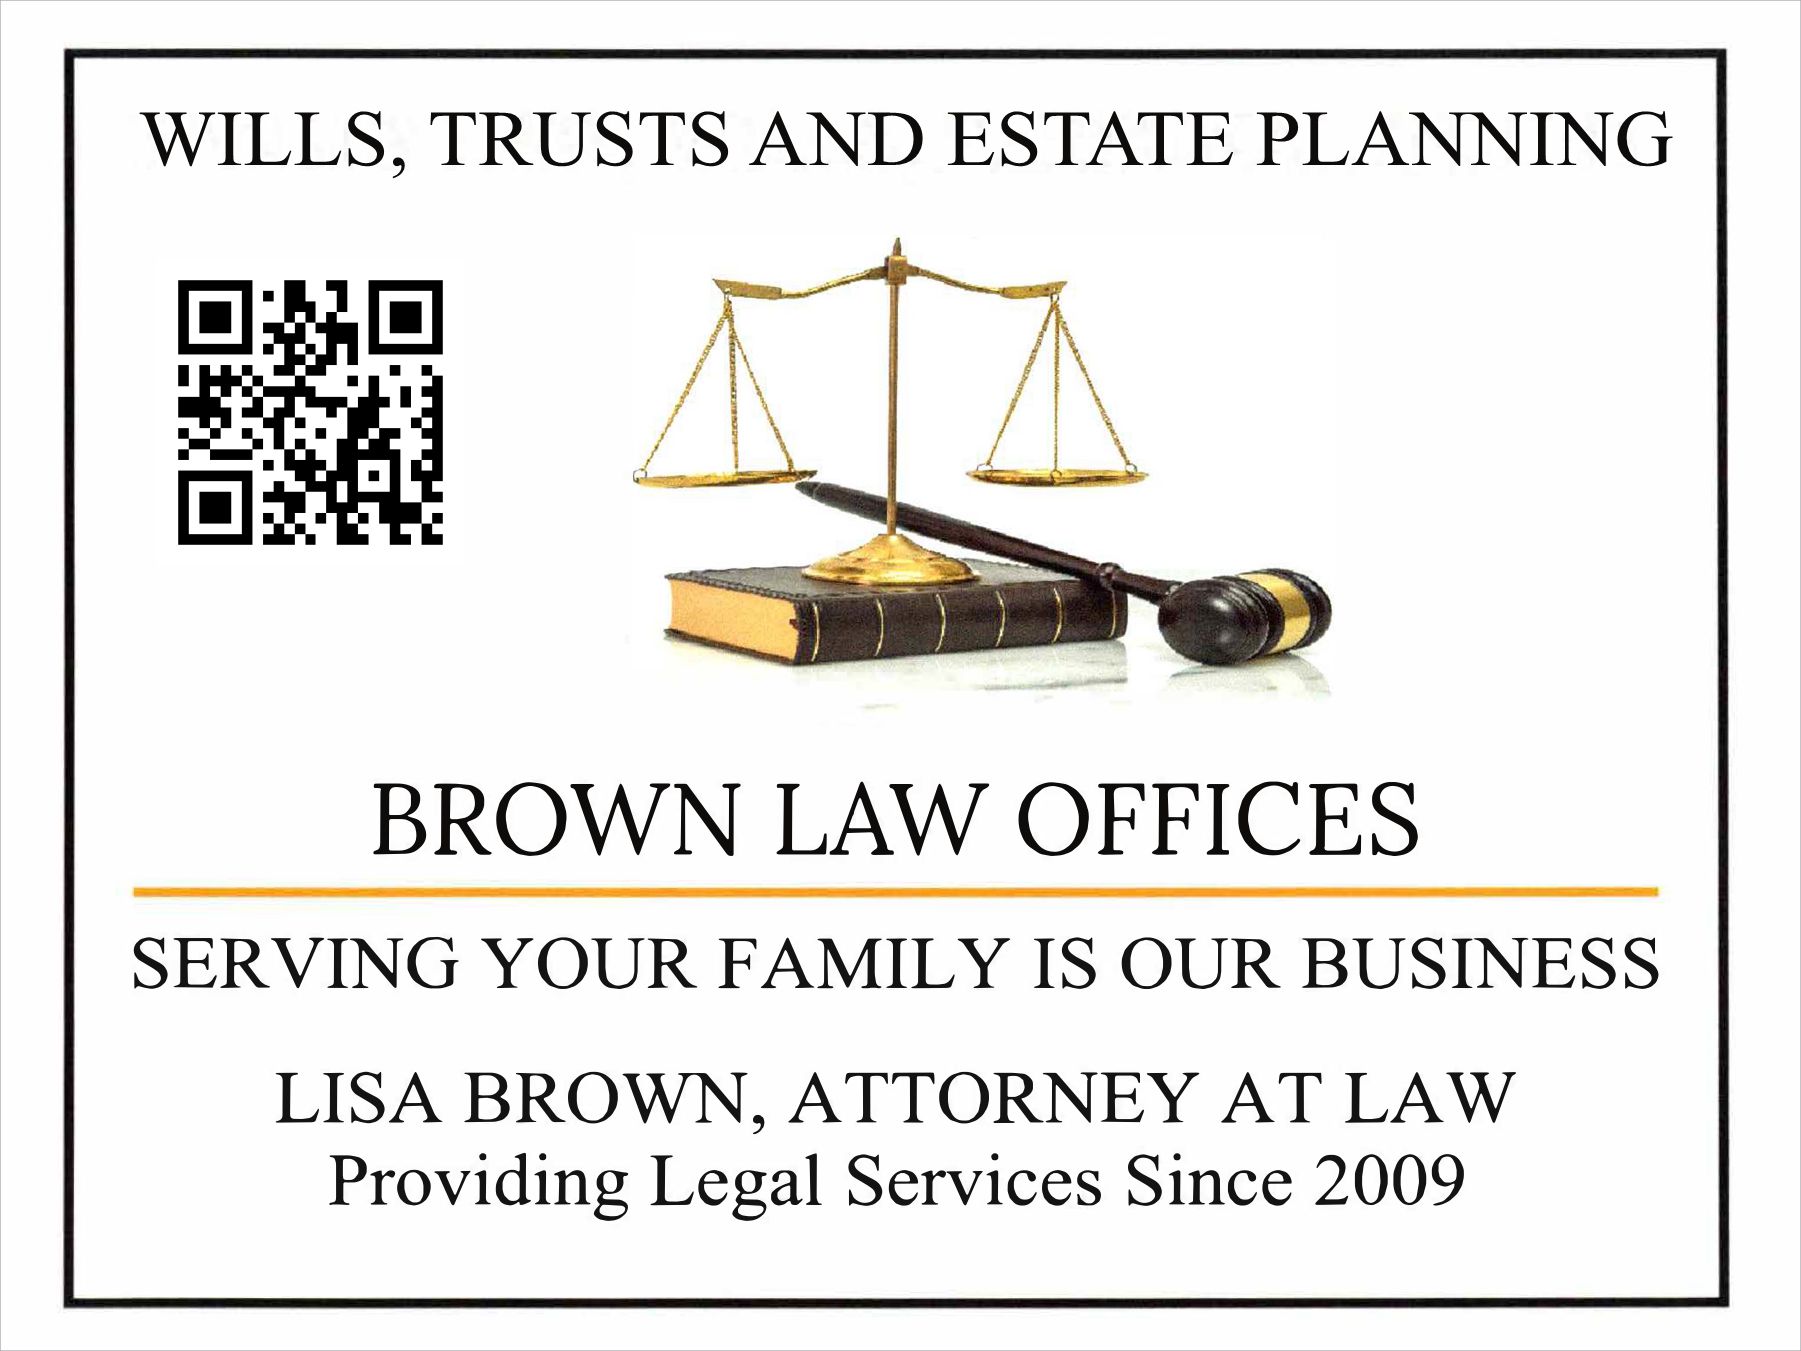 Lisa Brown Law